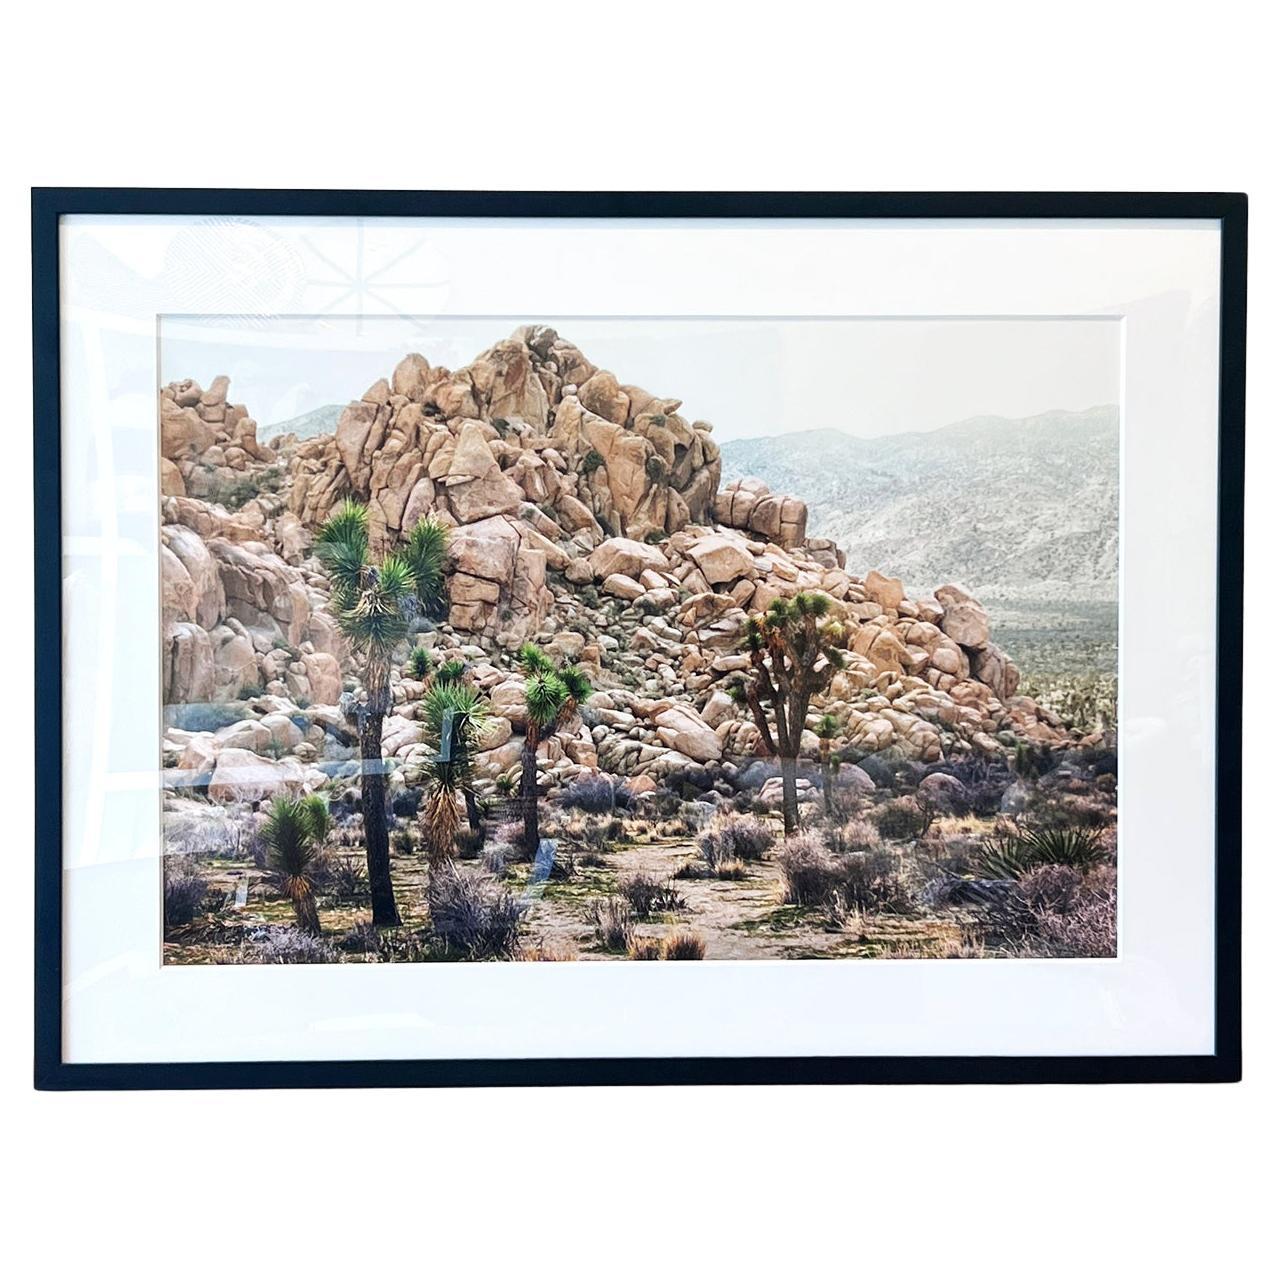 Photographie couleur encadrée Joshua Tree National Park 20"x30" de paysage désert, 2020